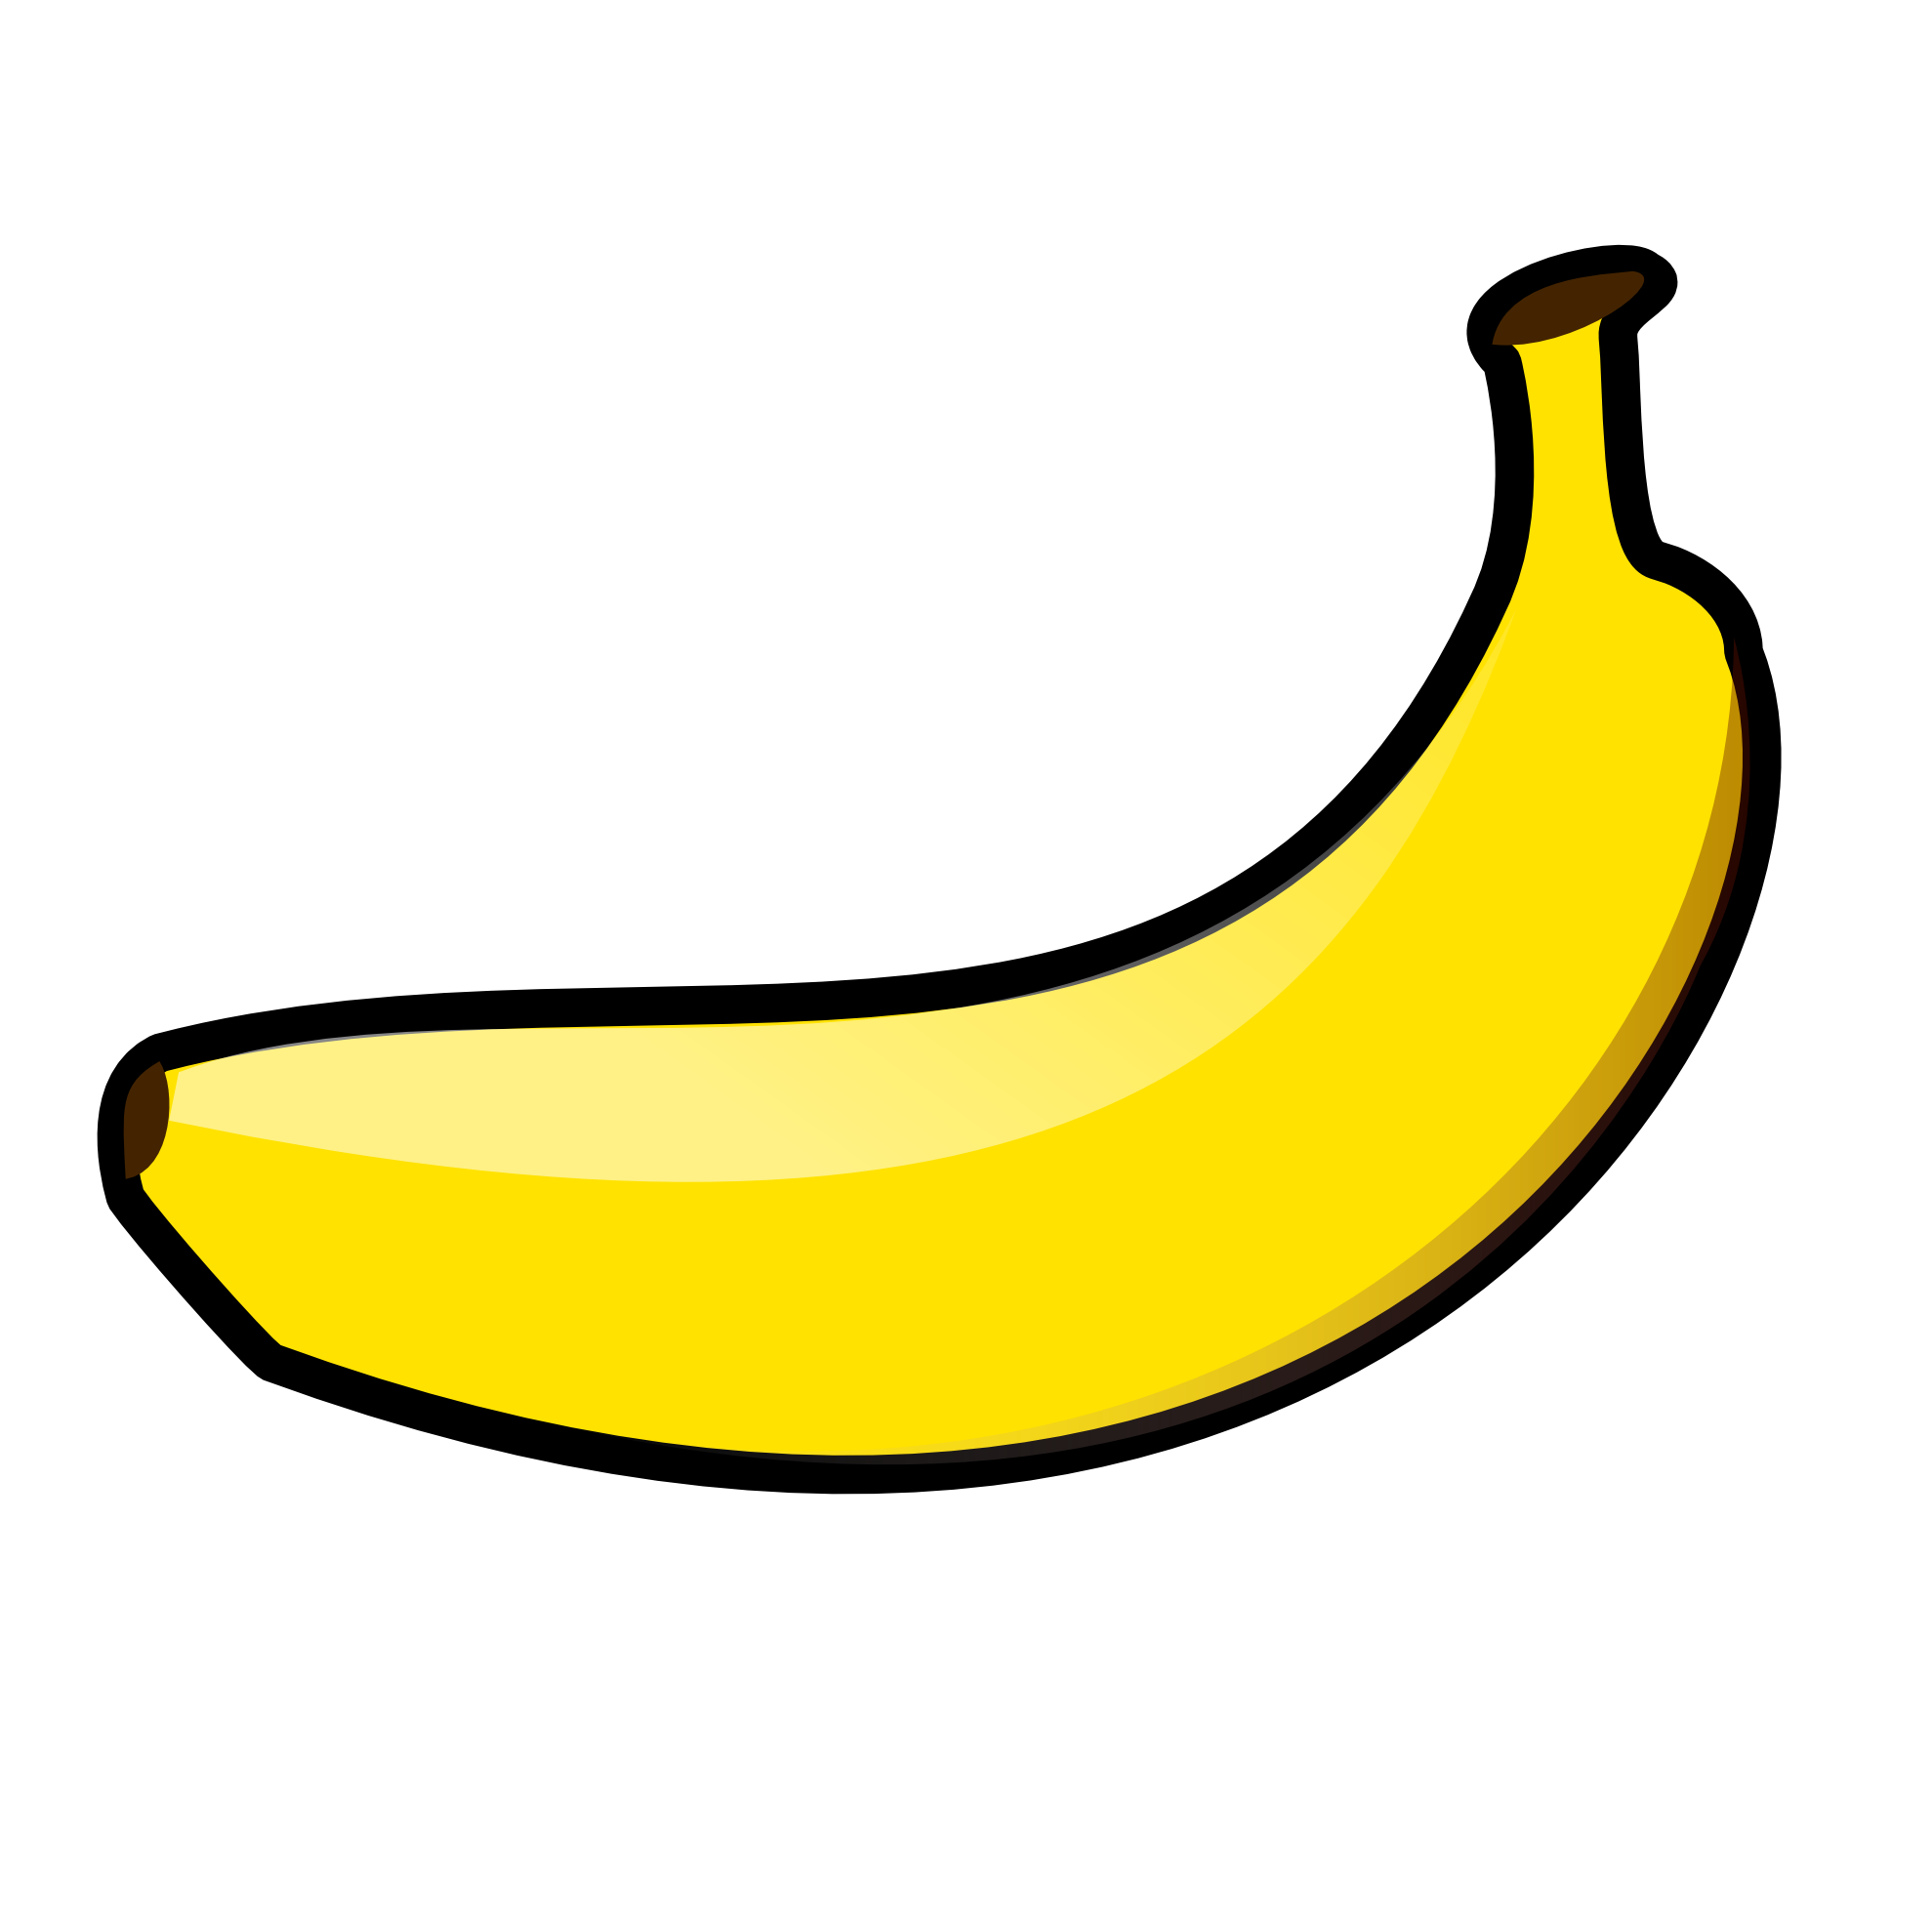 banana # 82062